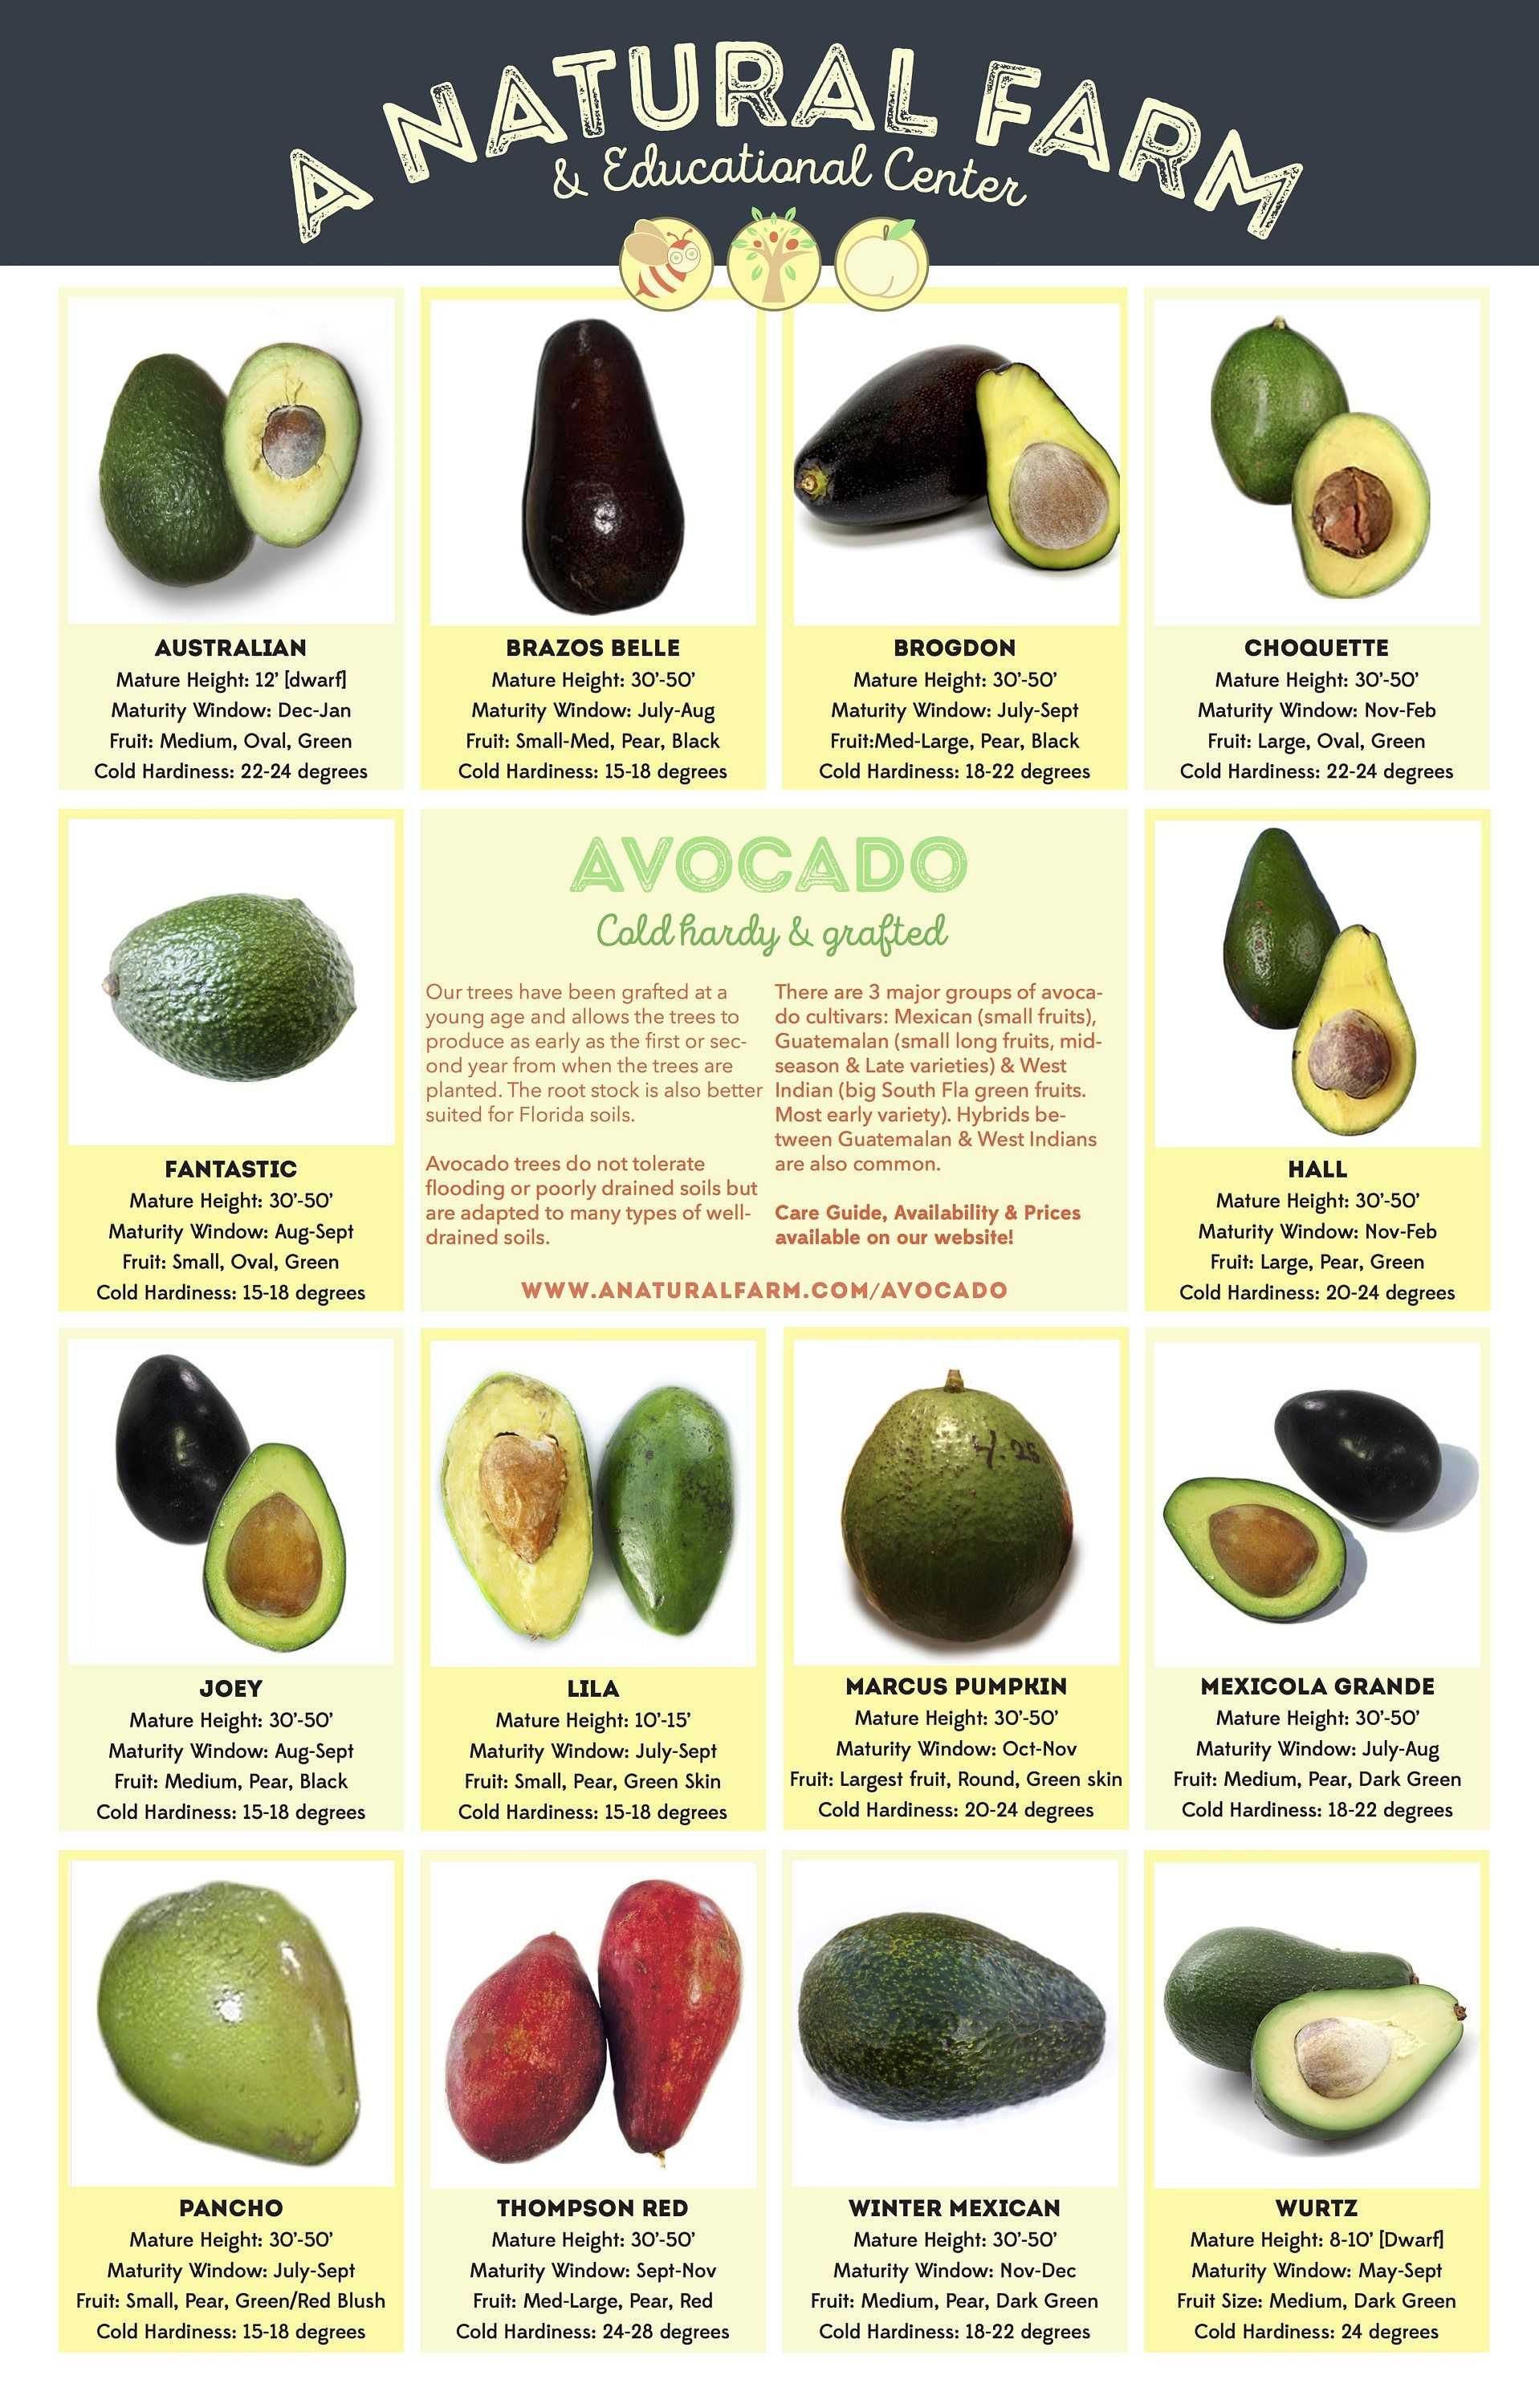 Авокадо: описание и сорта, состав и калорийность, польза и применение авокадо